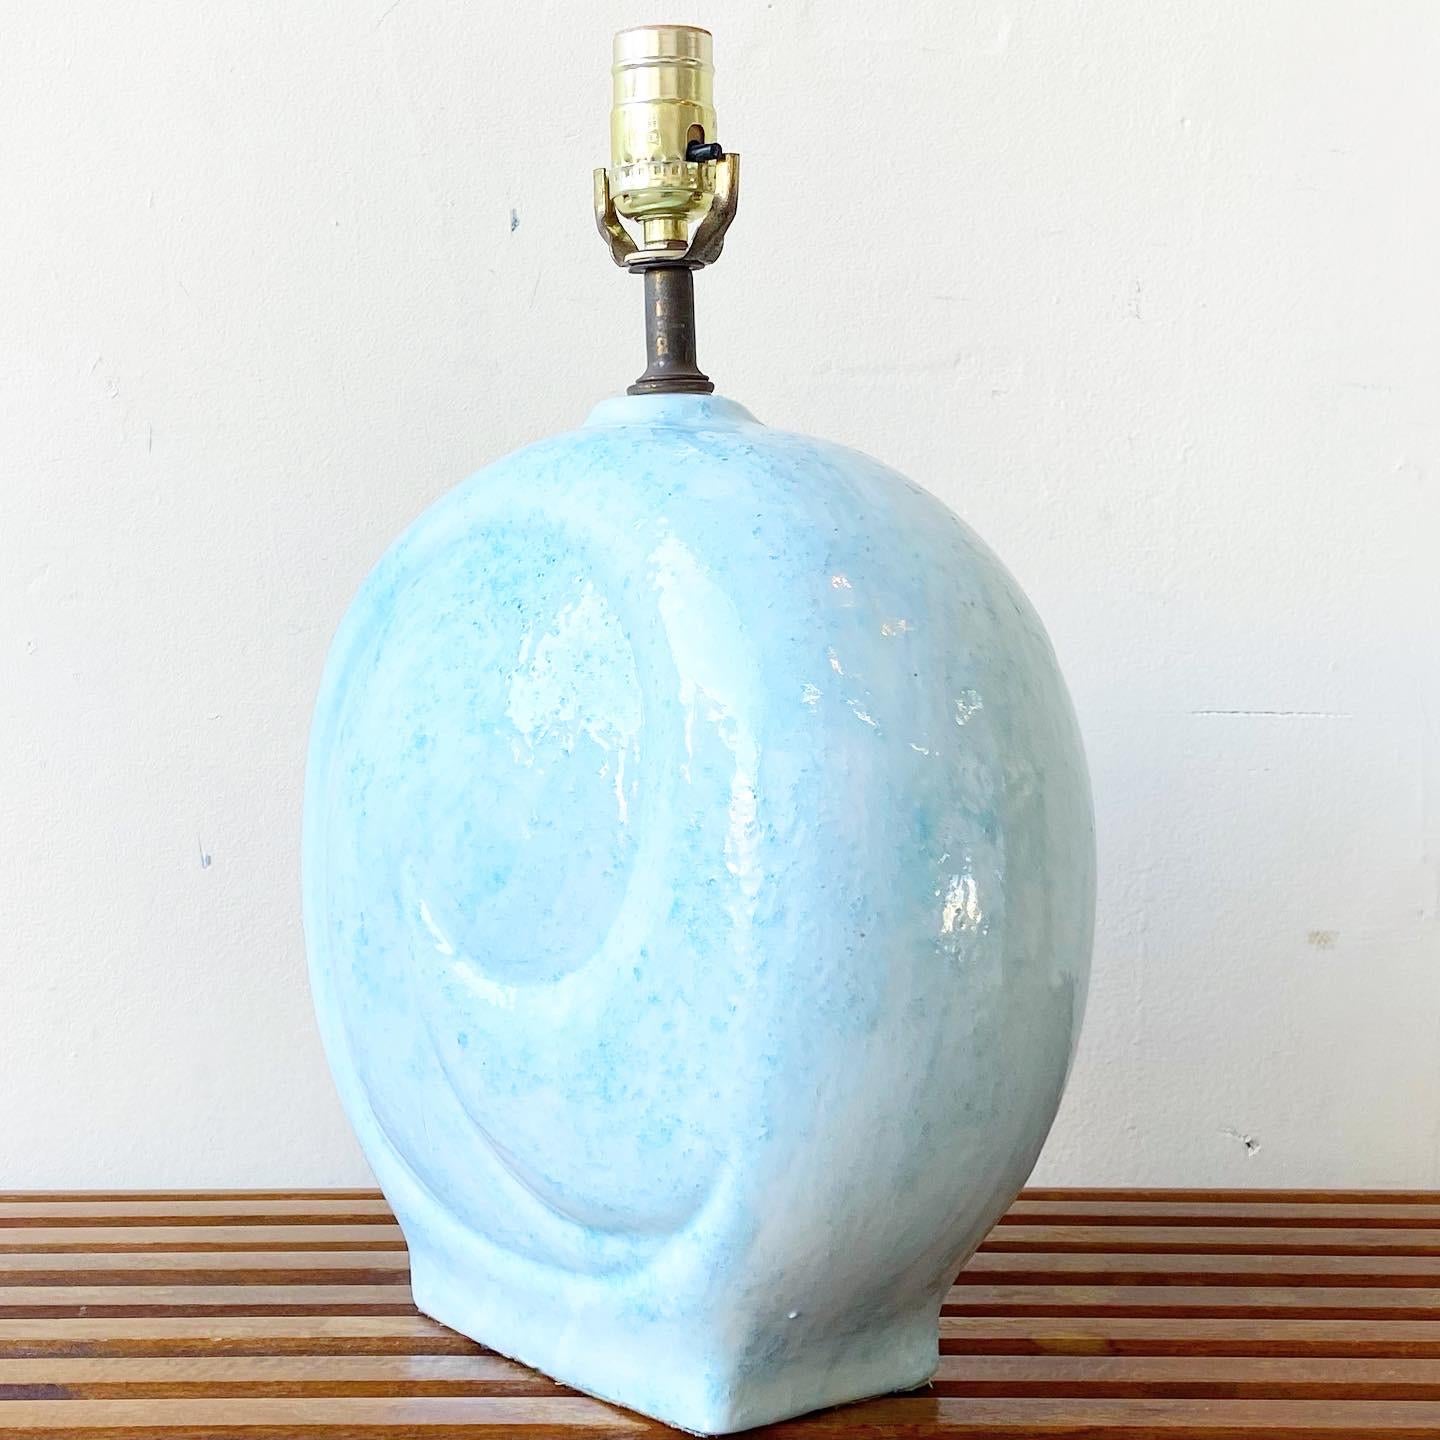 Unglaubliche Tischlampe aus Keramik. Zeigt eine wunderschöne, babyblaue, kreisförmige Wirbelform.

Zusätzliche Informationen:
MATERIAL: Keramik
Farbe: Blau
Stil: Postmoderne
Zeitspanne: 
Herkunftsort: USA
Abmessungen: 9